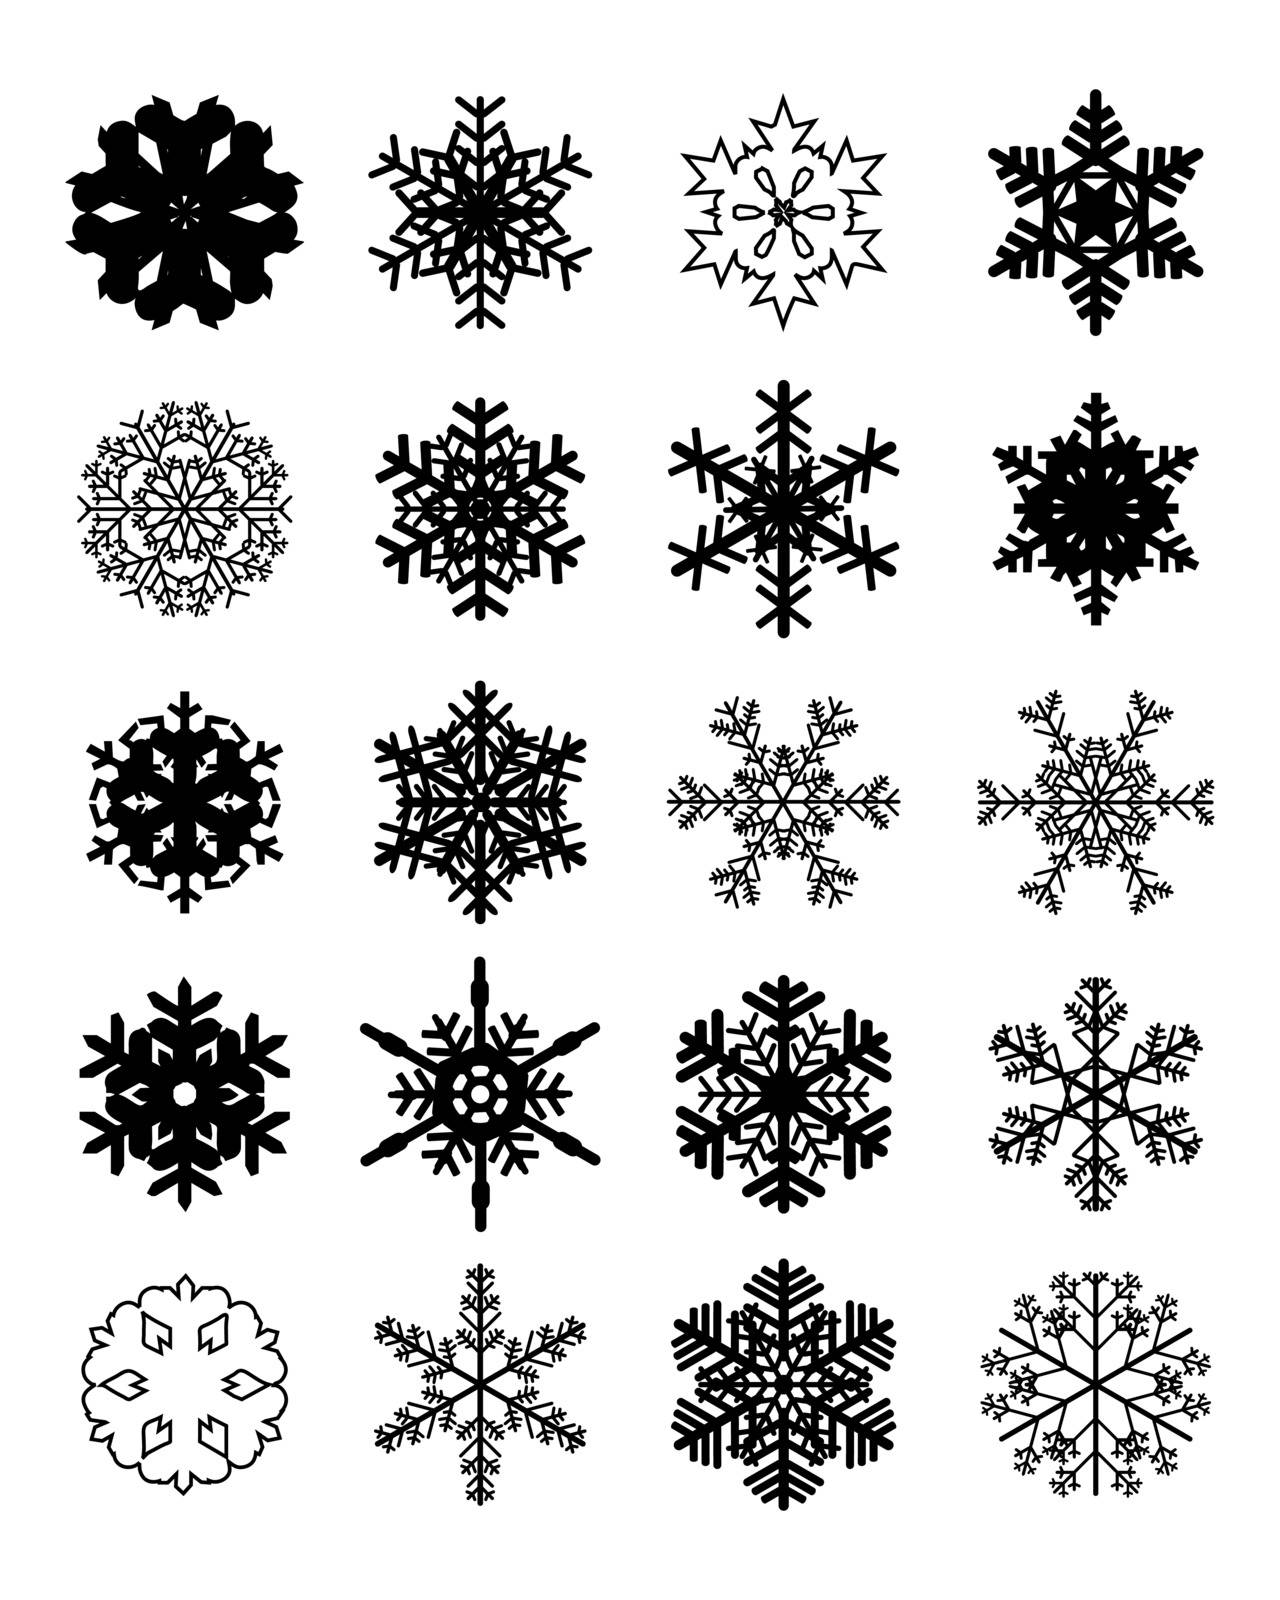 black snowflakes by ratkomat